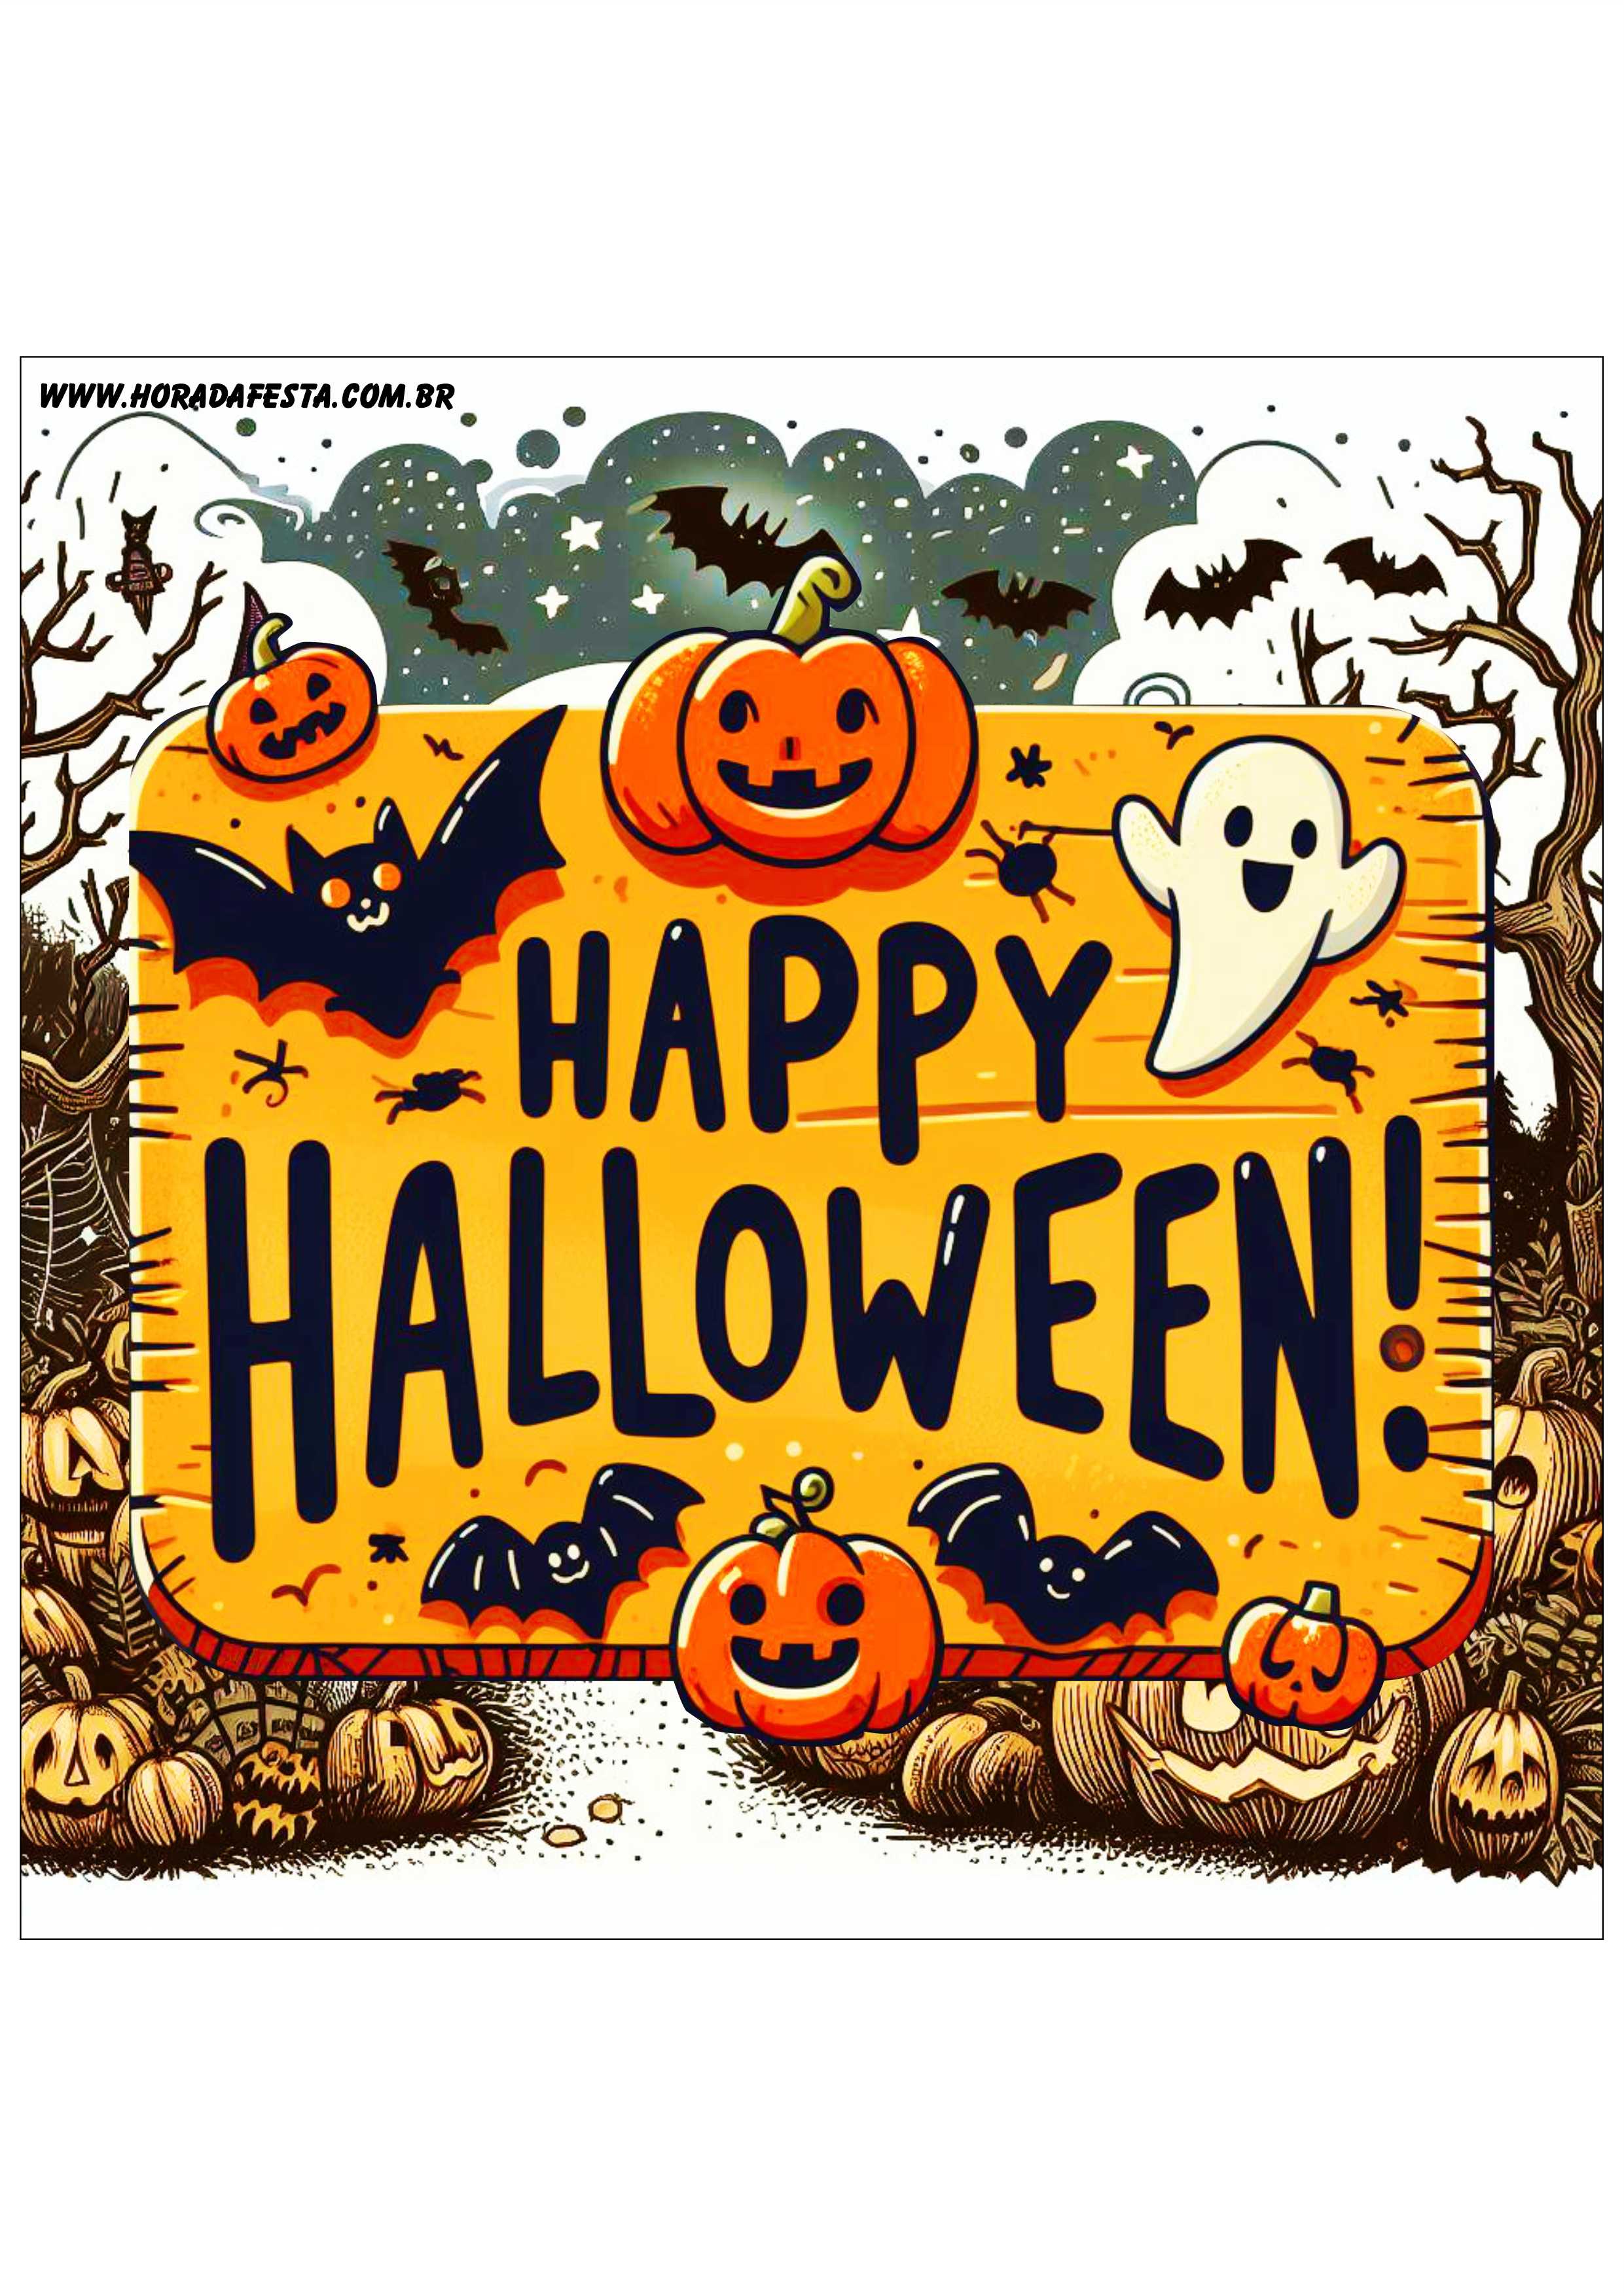 Happy Halloween adesivo tag sticker painel decoração grátis de festa artigos de papelaria png